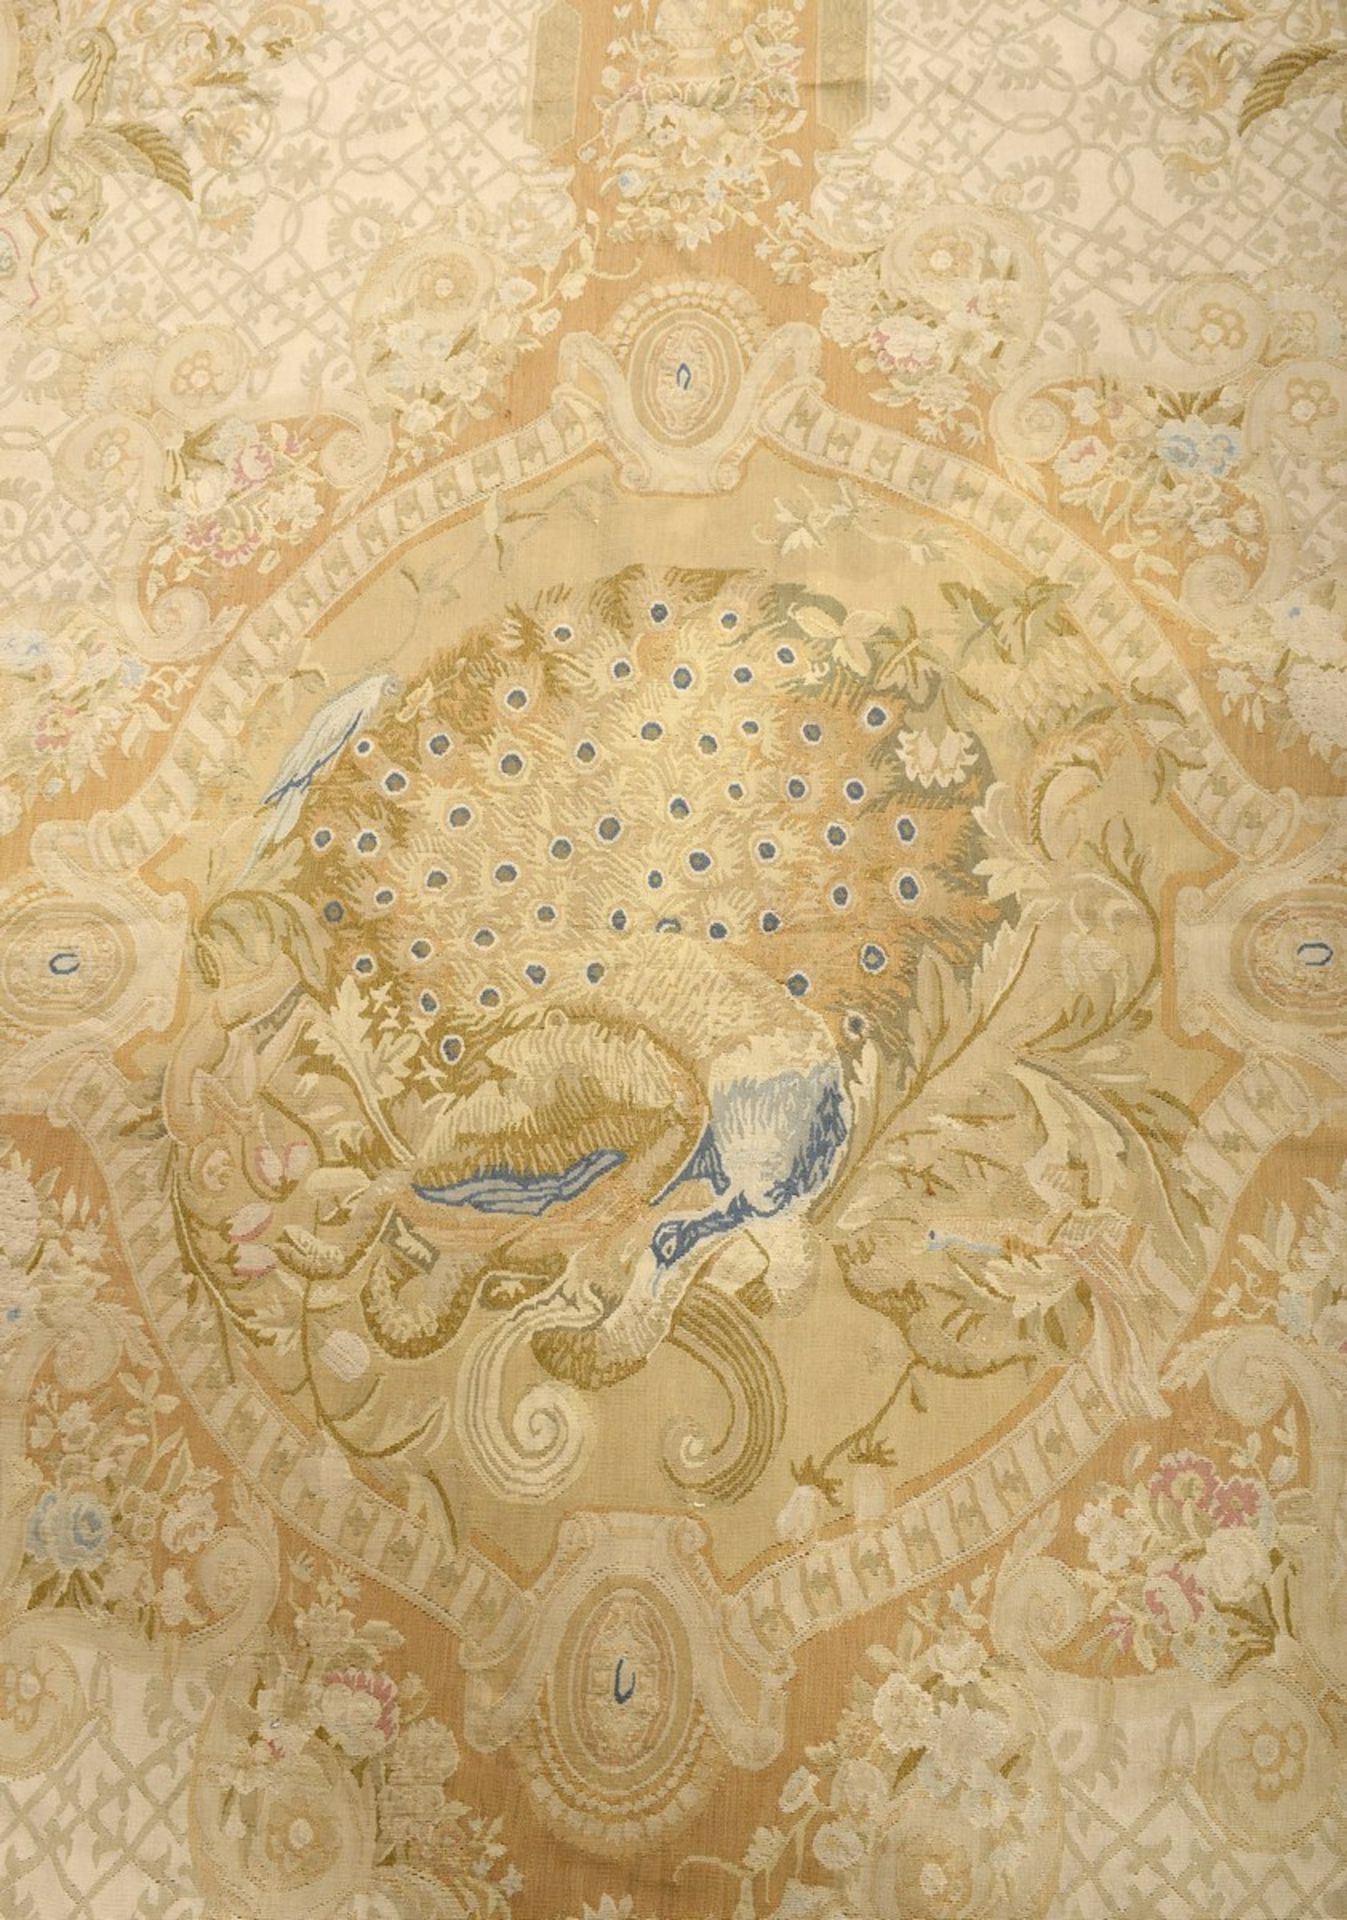 Großer Aubusson Teppich in Grün- und Beigetönen nach altem Vorbild, 20.Jh., 280x310cm - Bild 3 aus 9